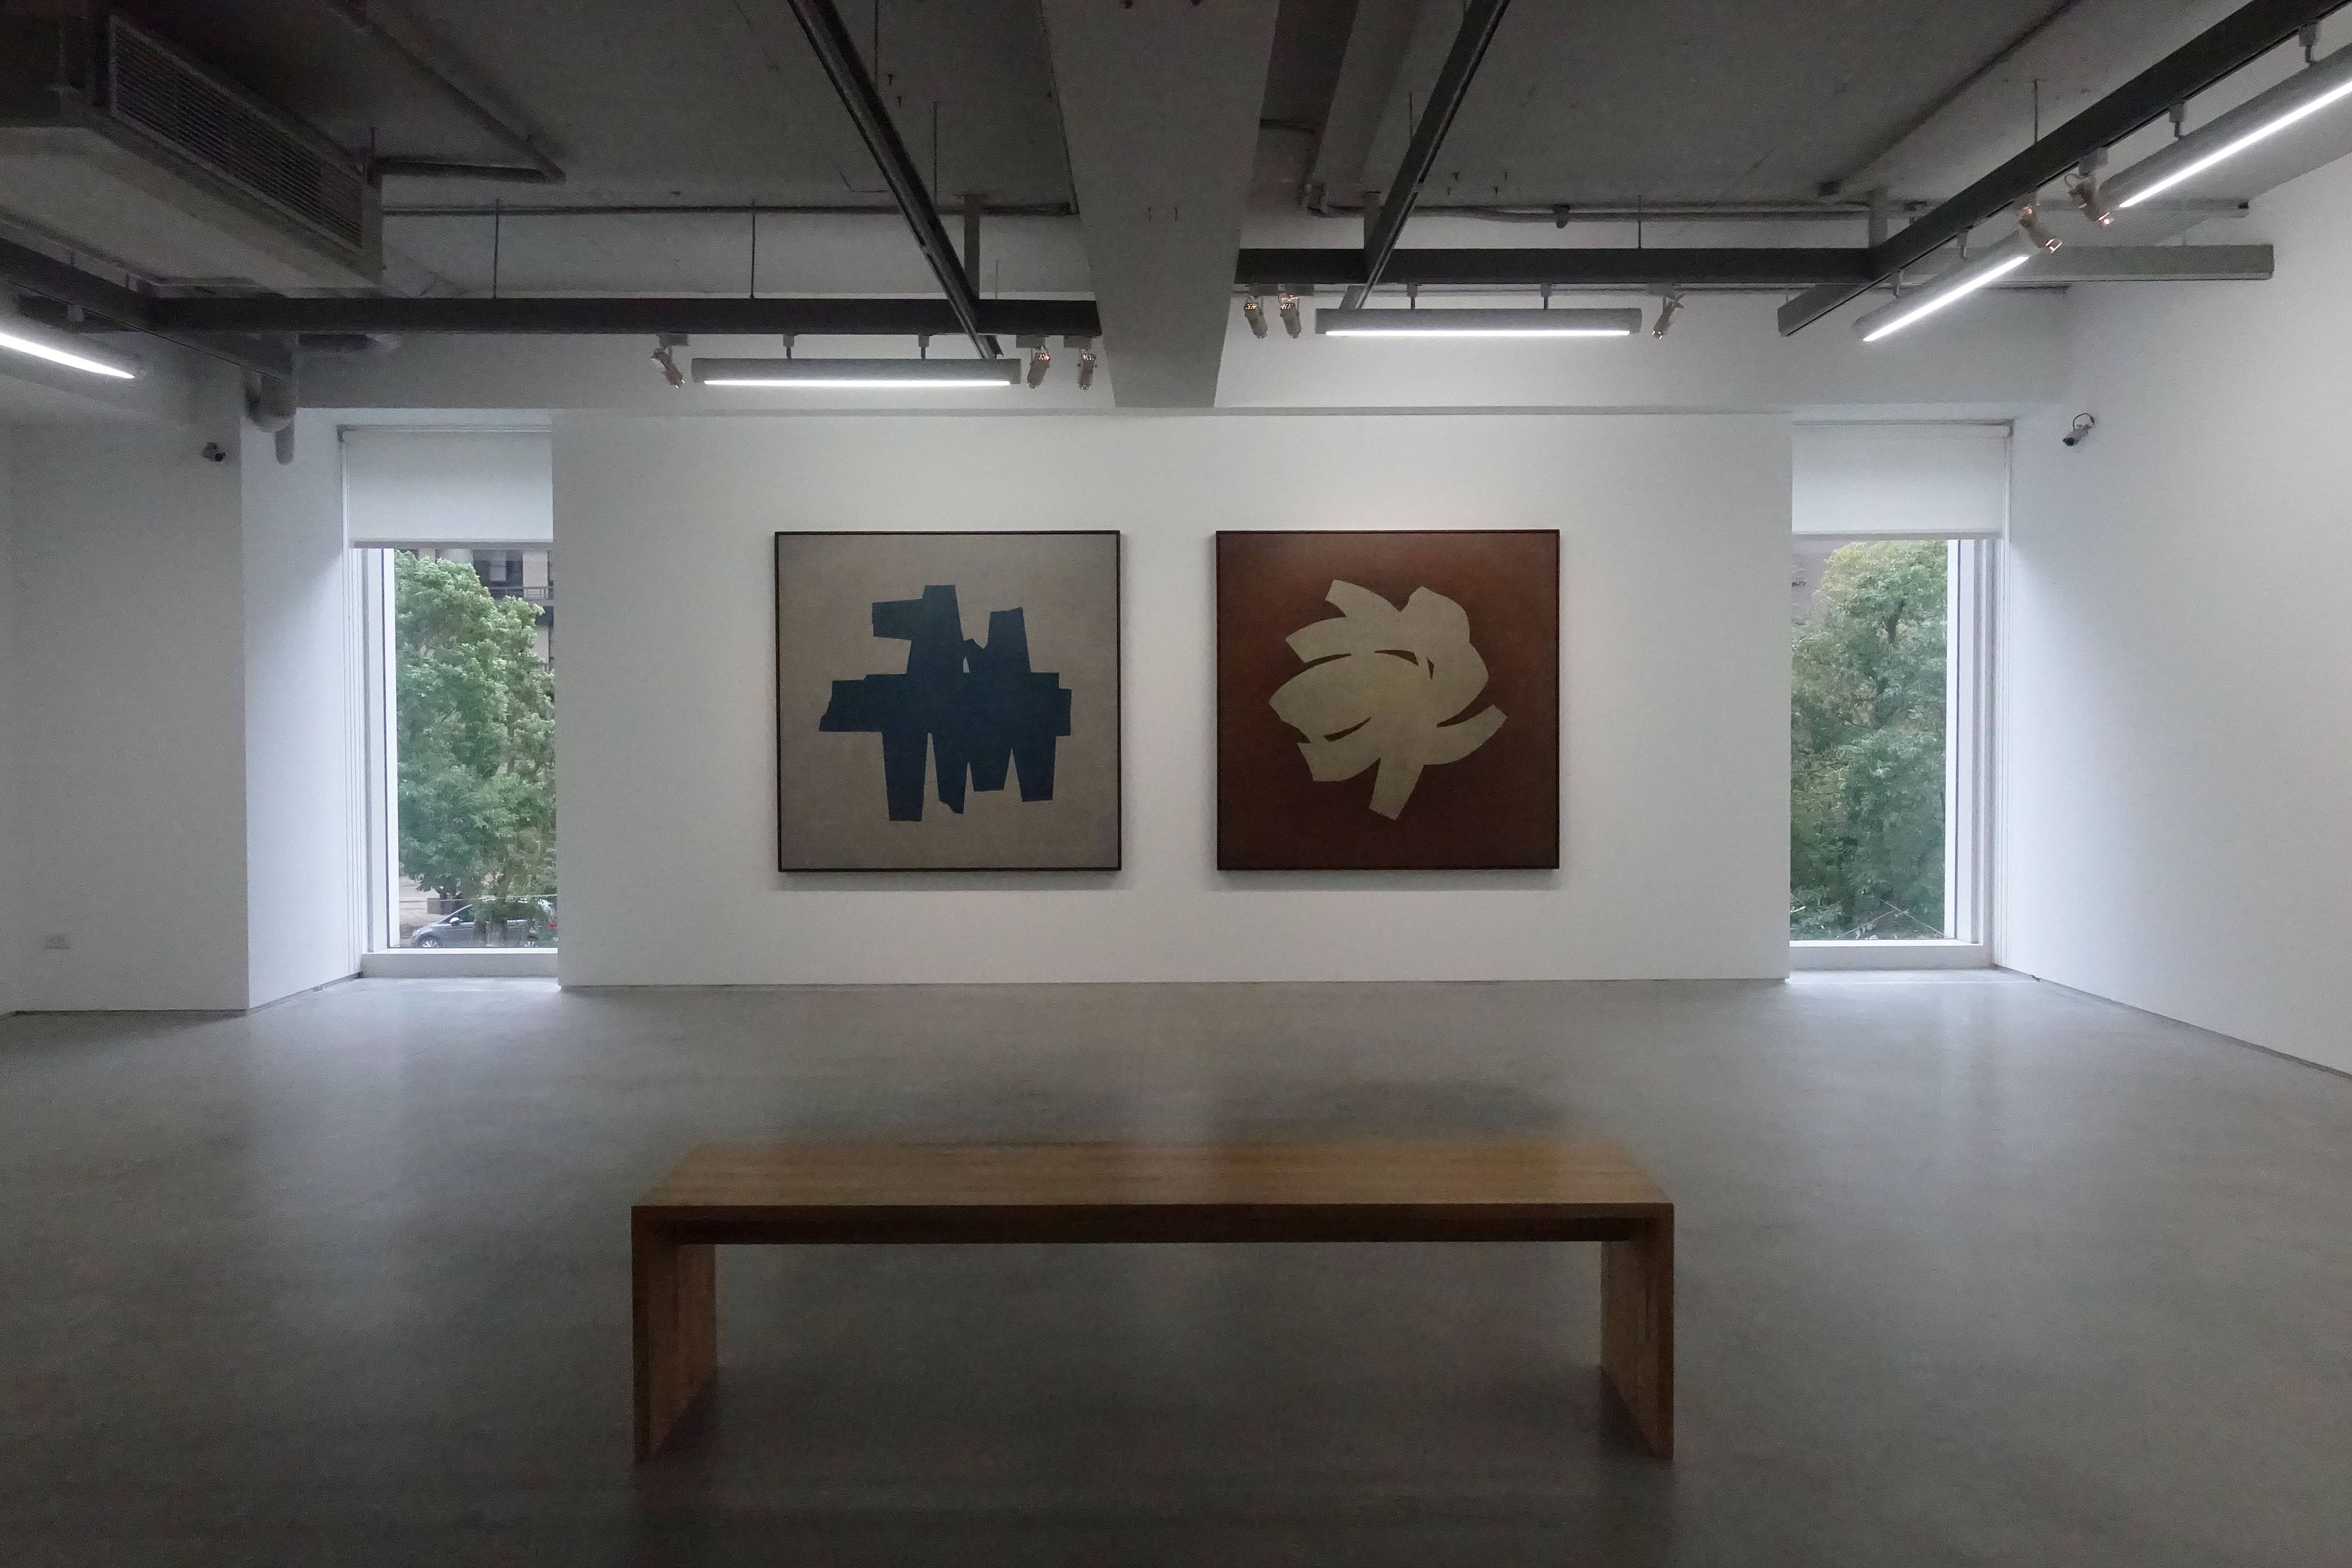 双方藝廊「未定物-吳東龍個展」二樓空間展覽一隅。